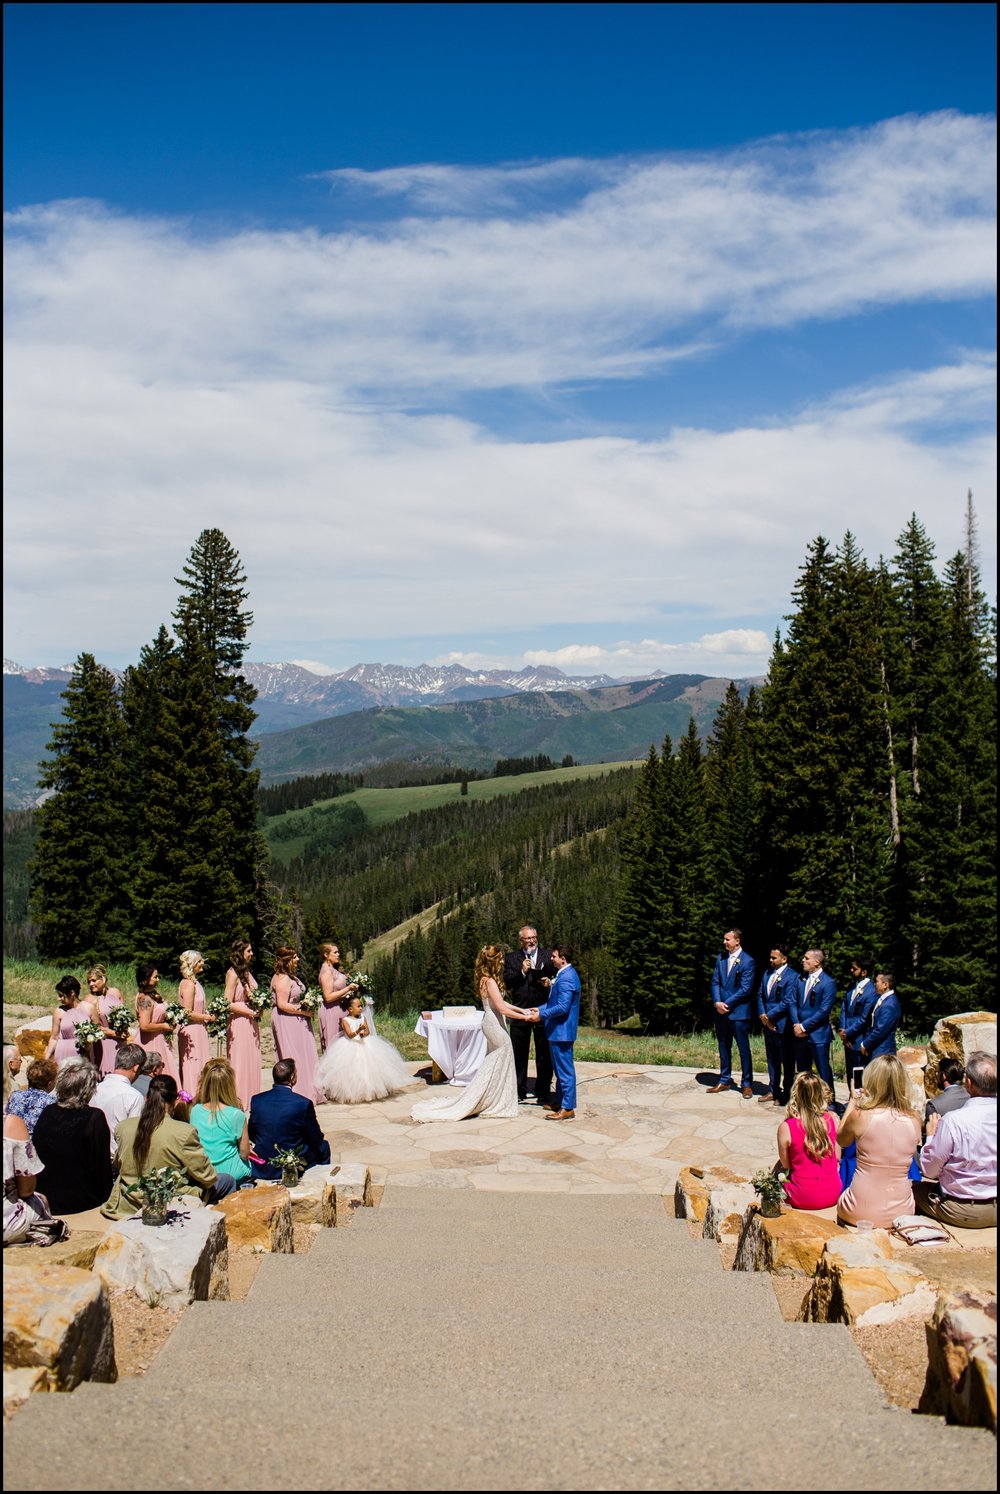  Denver wedding ceremony 